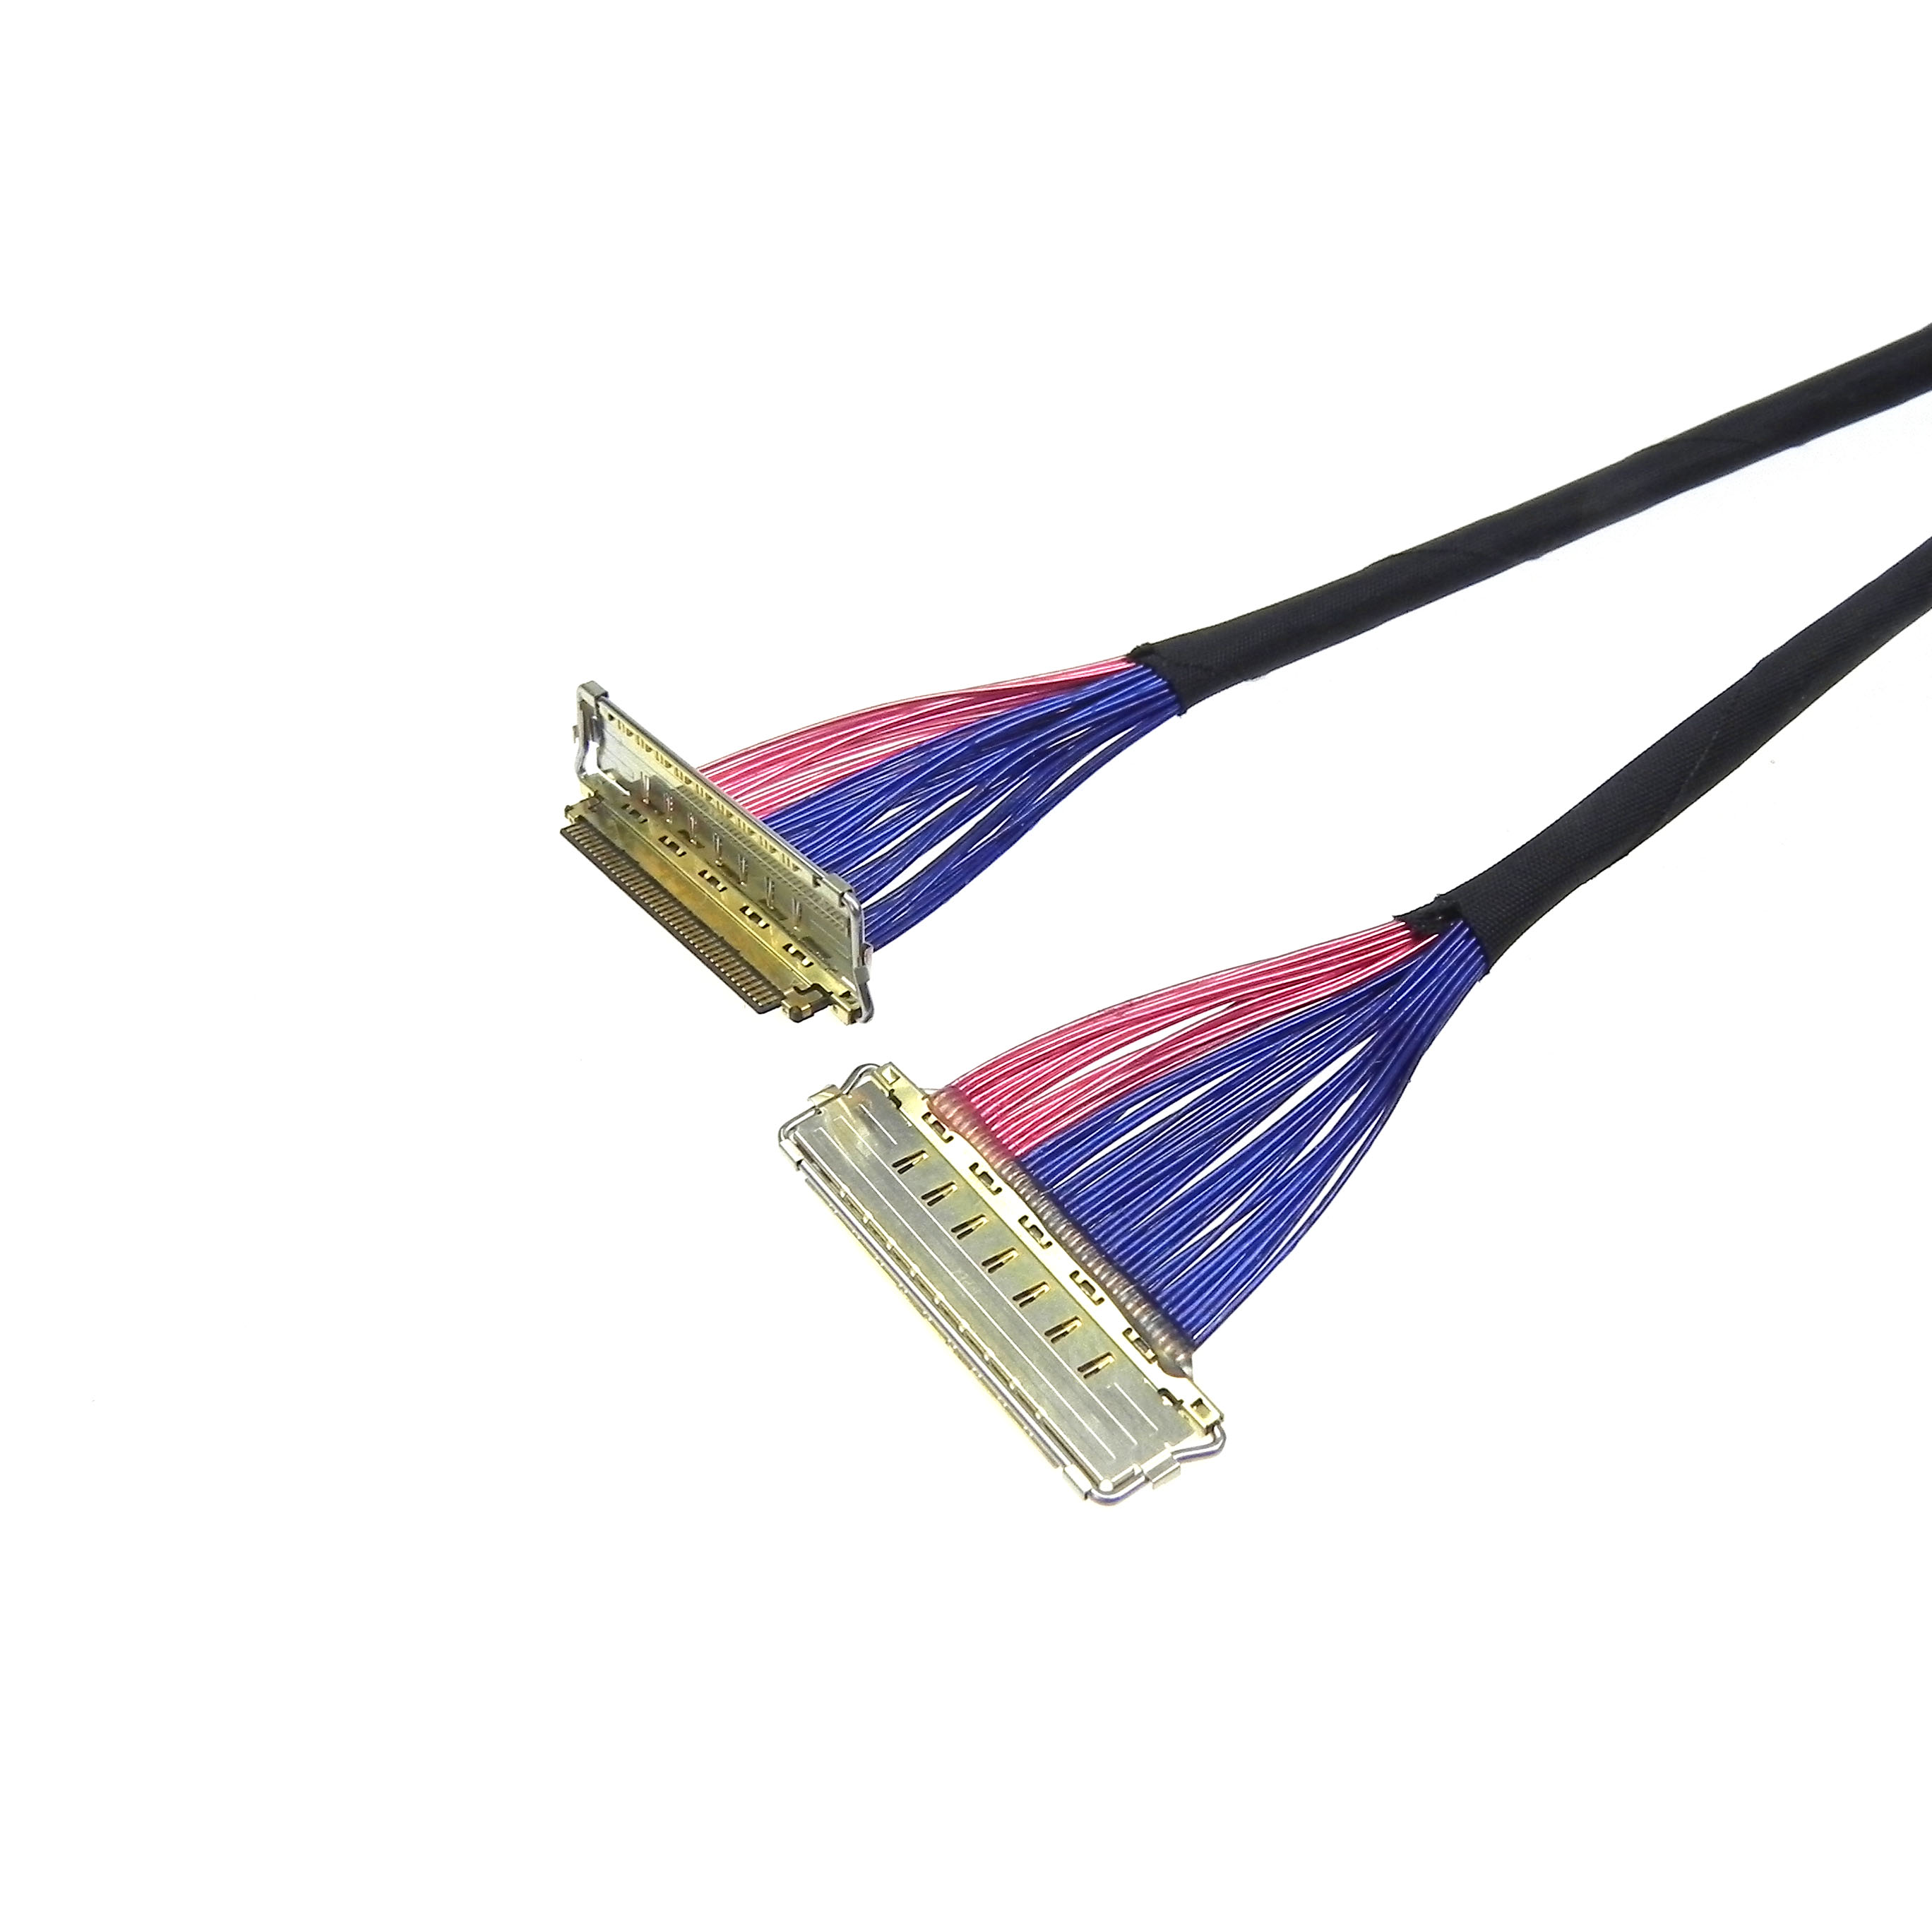 I-PEX20680-040T to I-PEX 20737-040T lvds edp cable